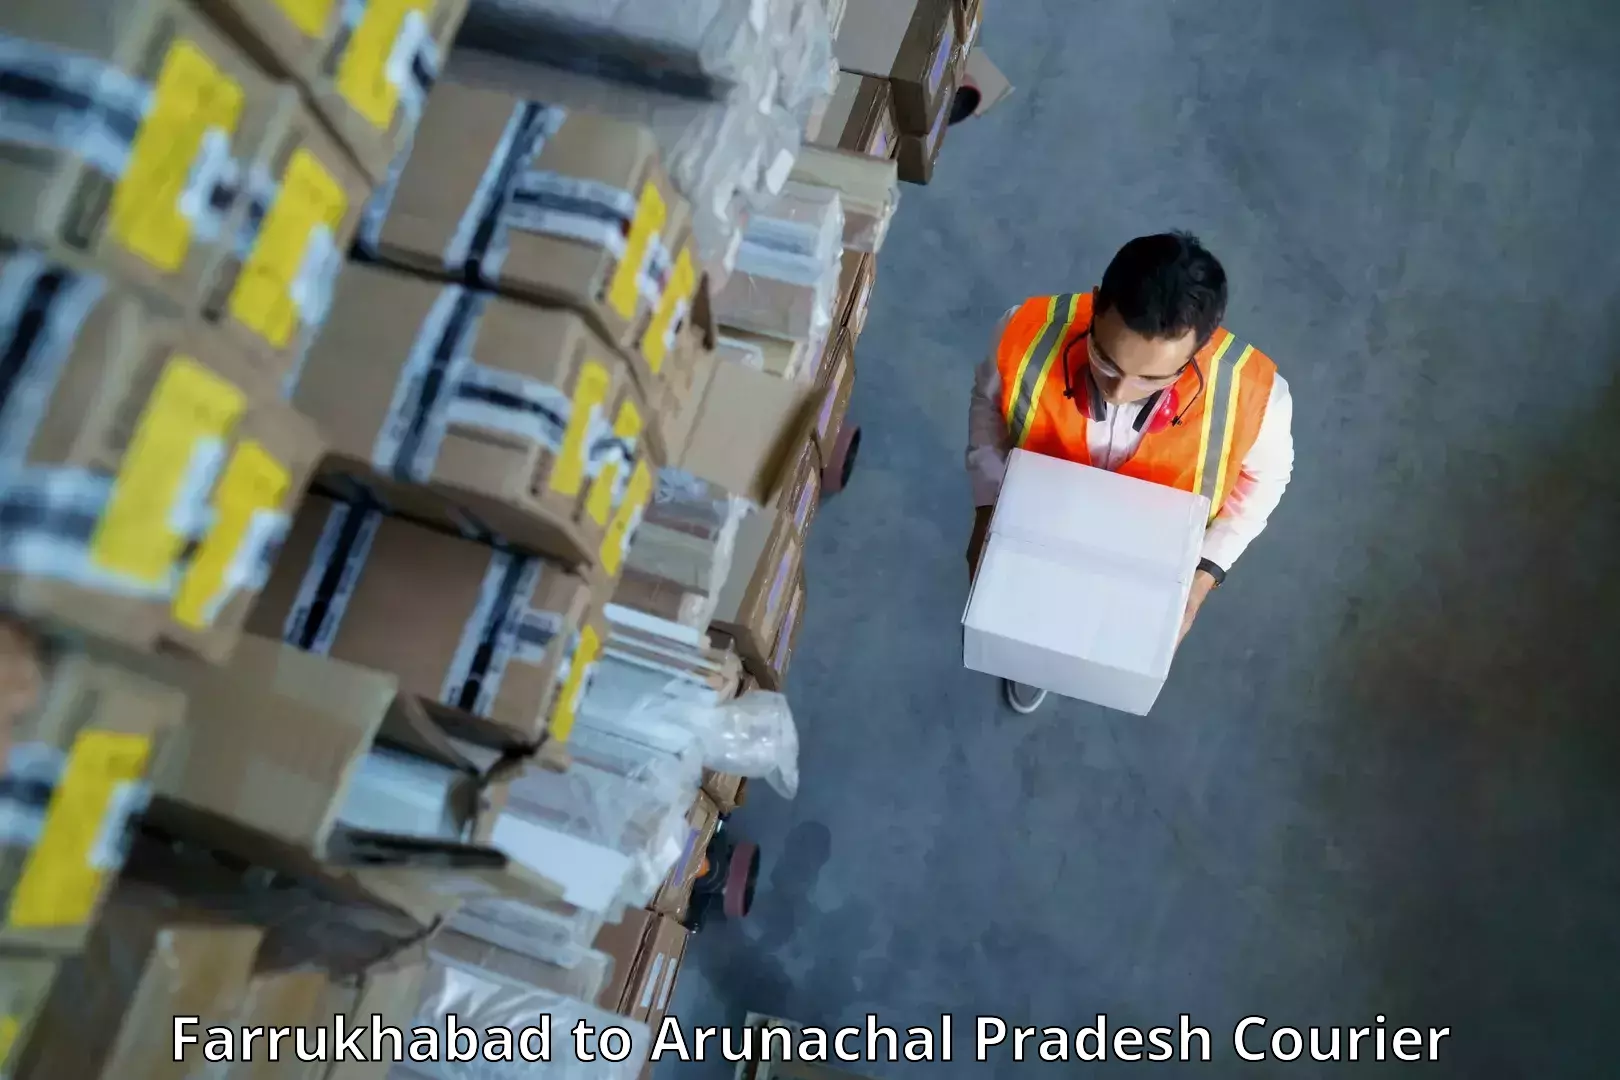 International parcel service Farrukhabad to Arunachal Pradesh